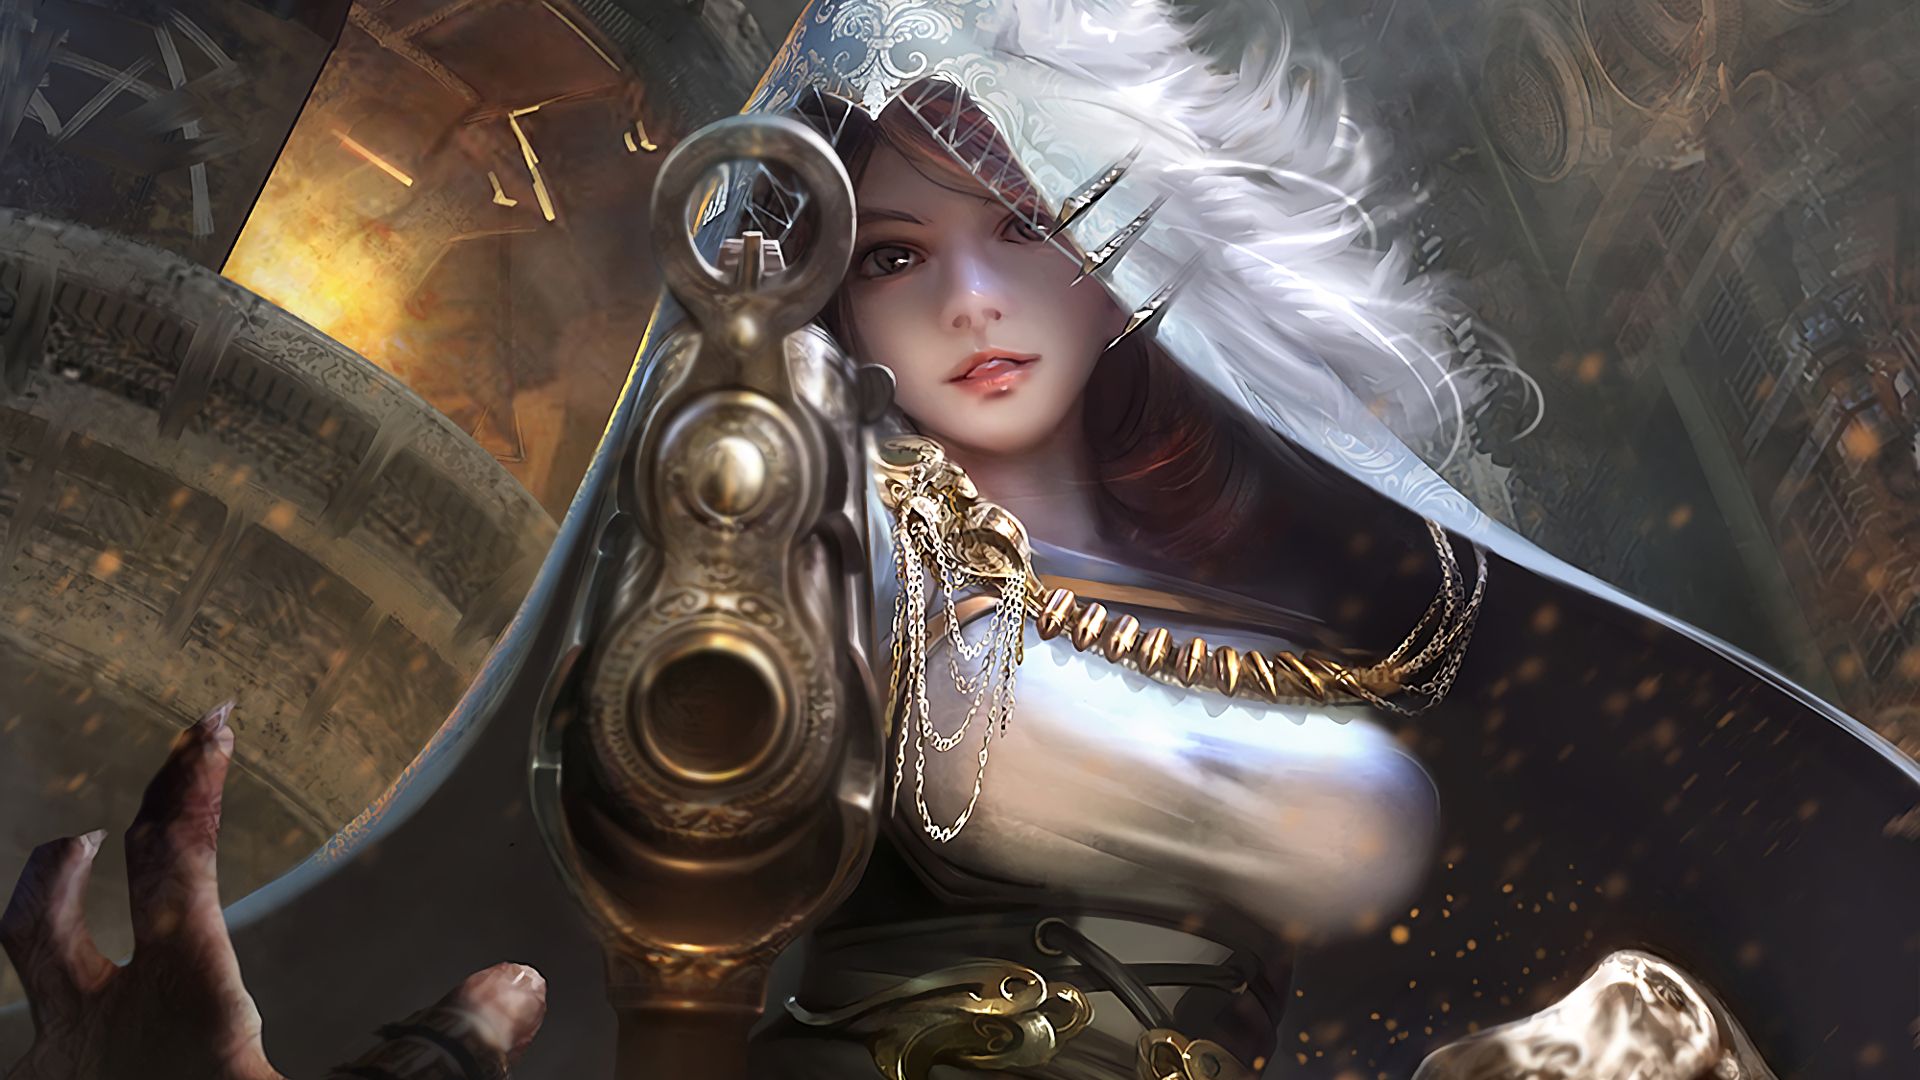 Warrior Girl Fantasy Art Wallpaper & Background